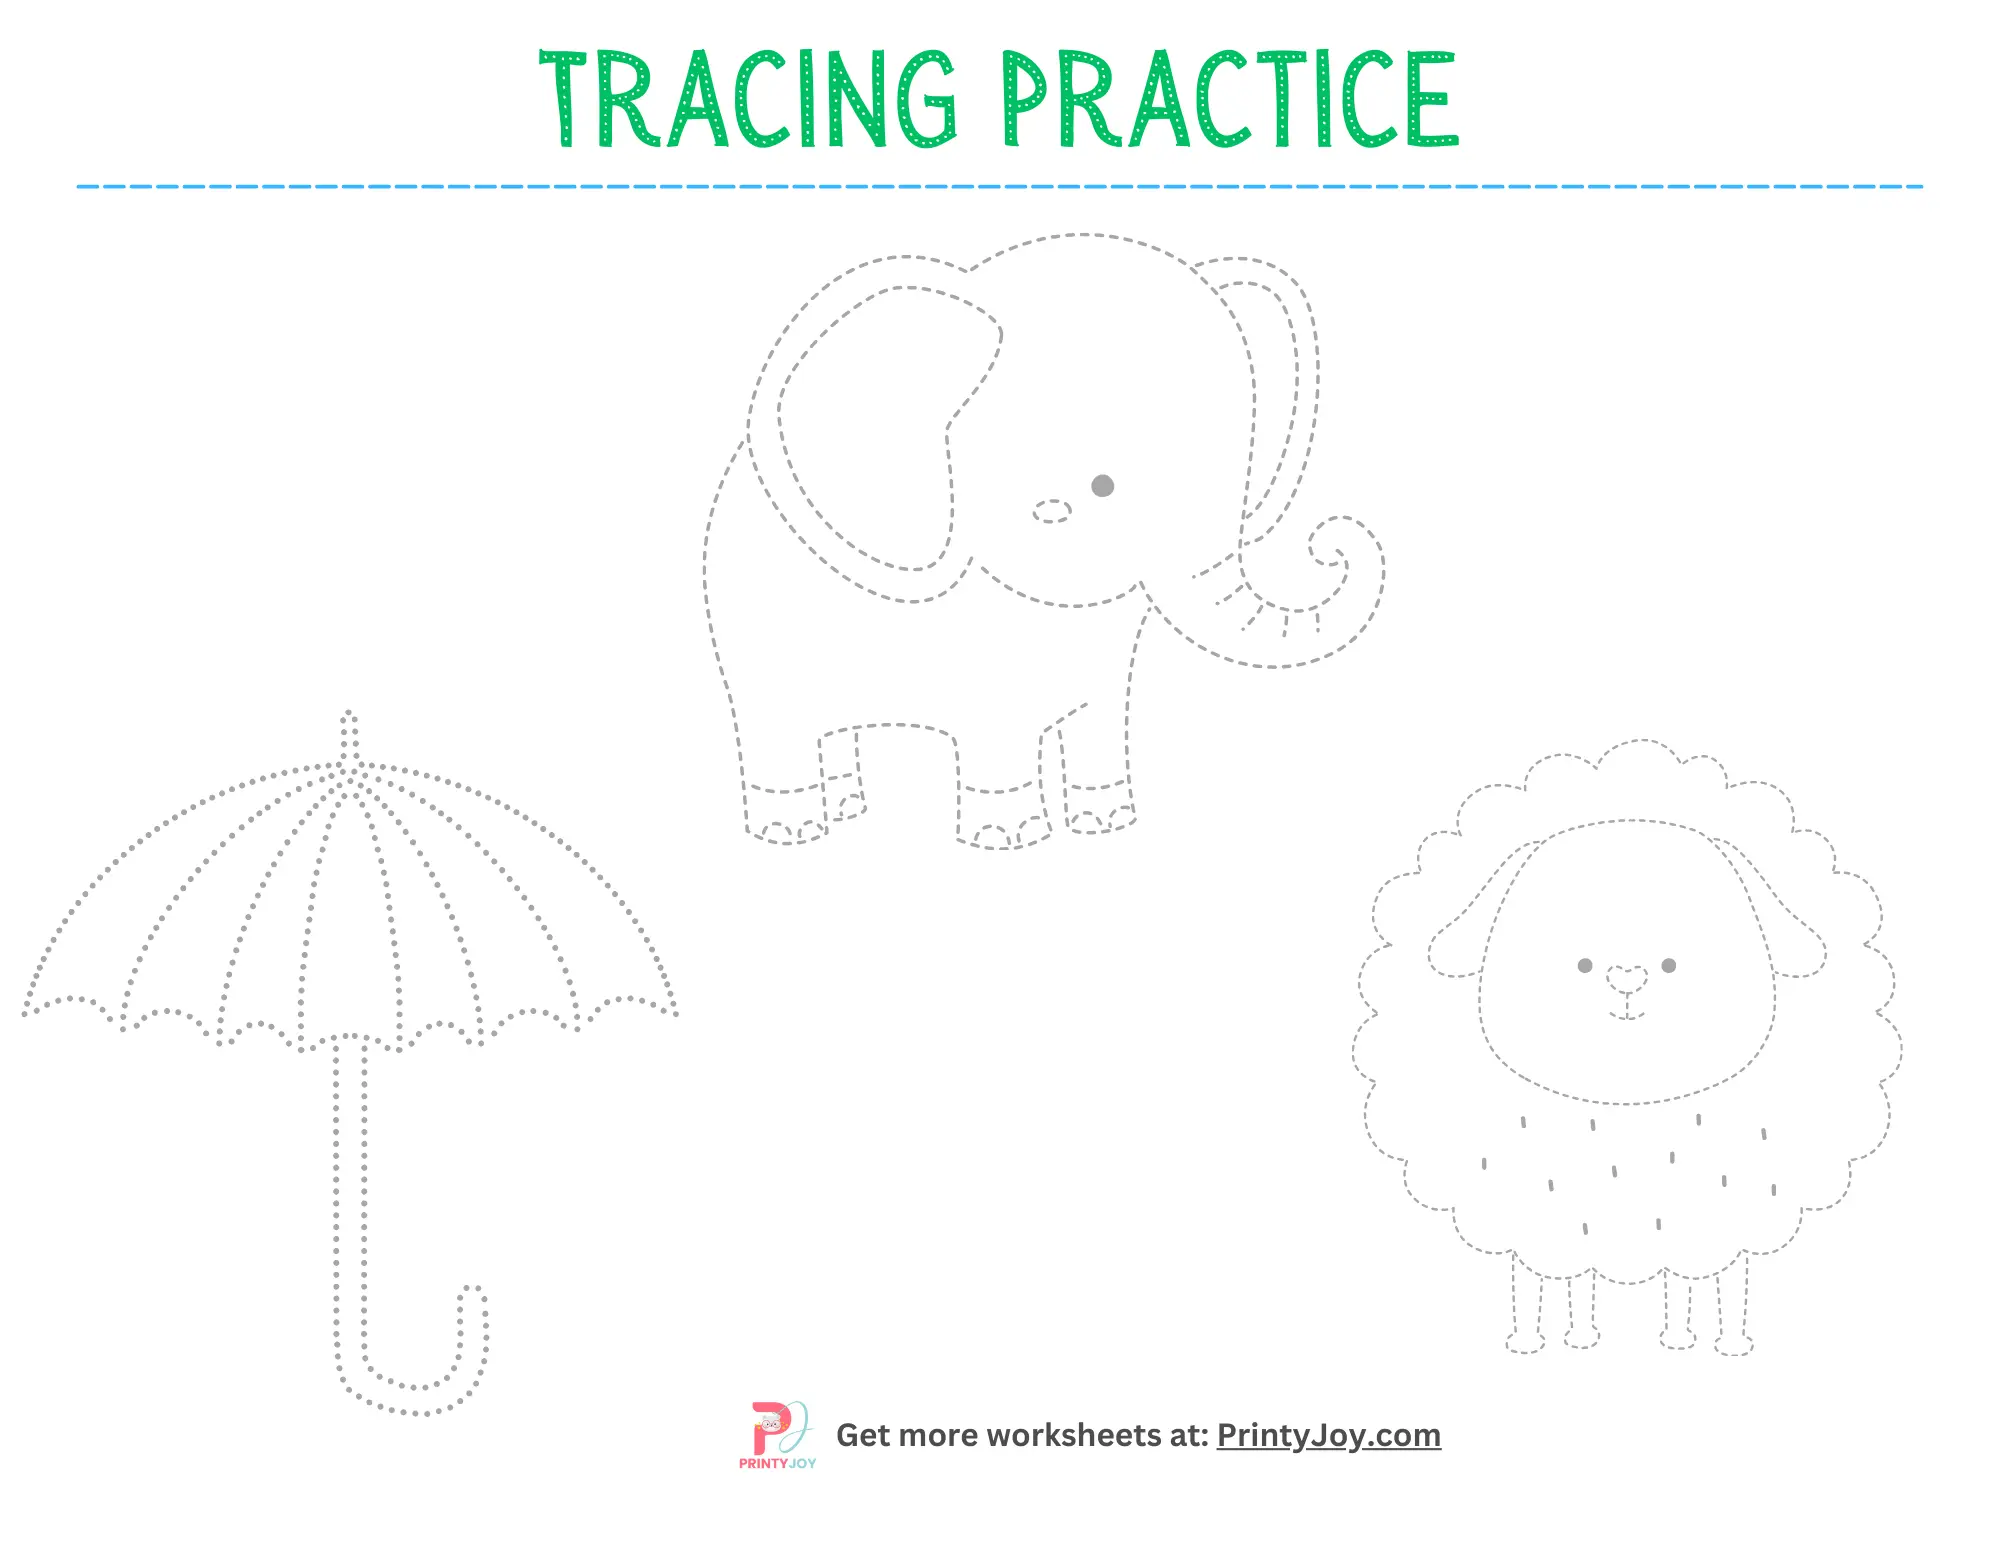 Free Printable Tracing Practice Worksheets